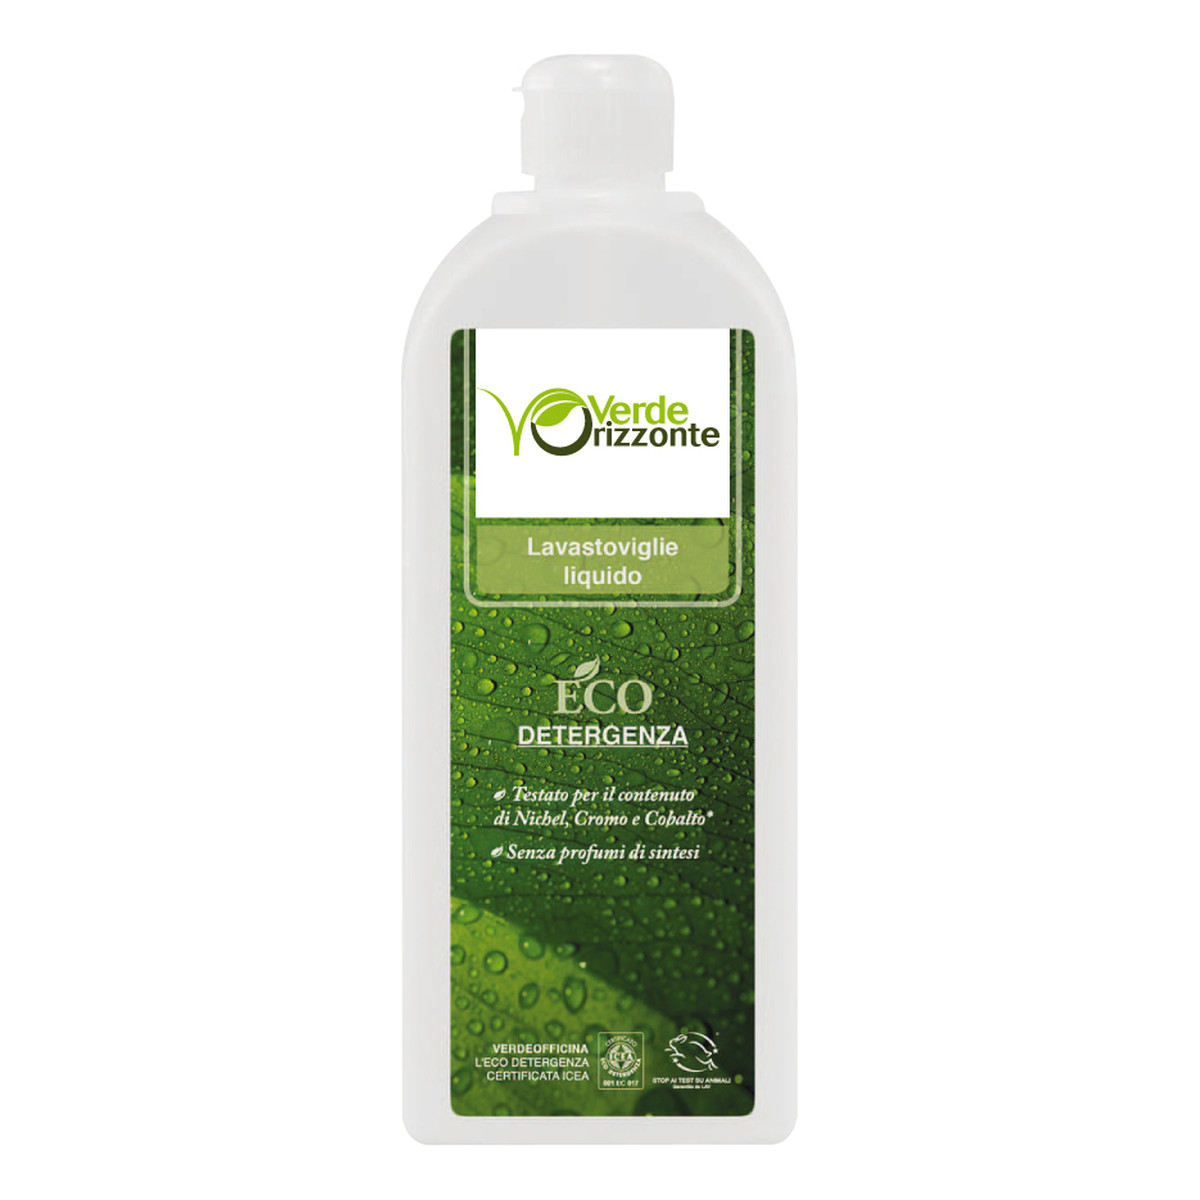 Verde Orizzonte Ekologiczny eukaliptusowy płyn do zmywarki 500ml